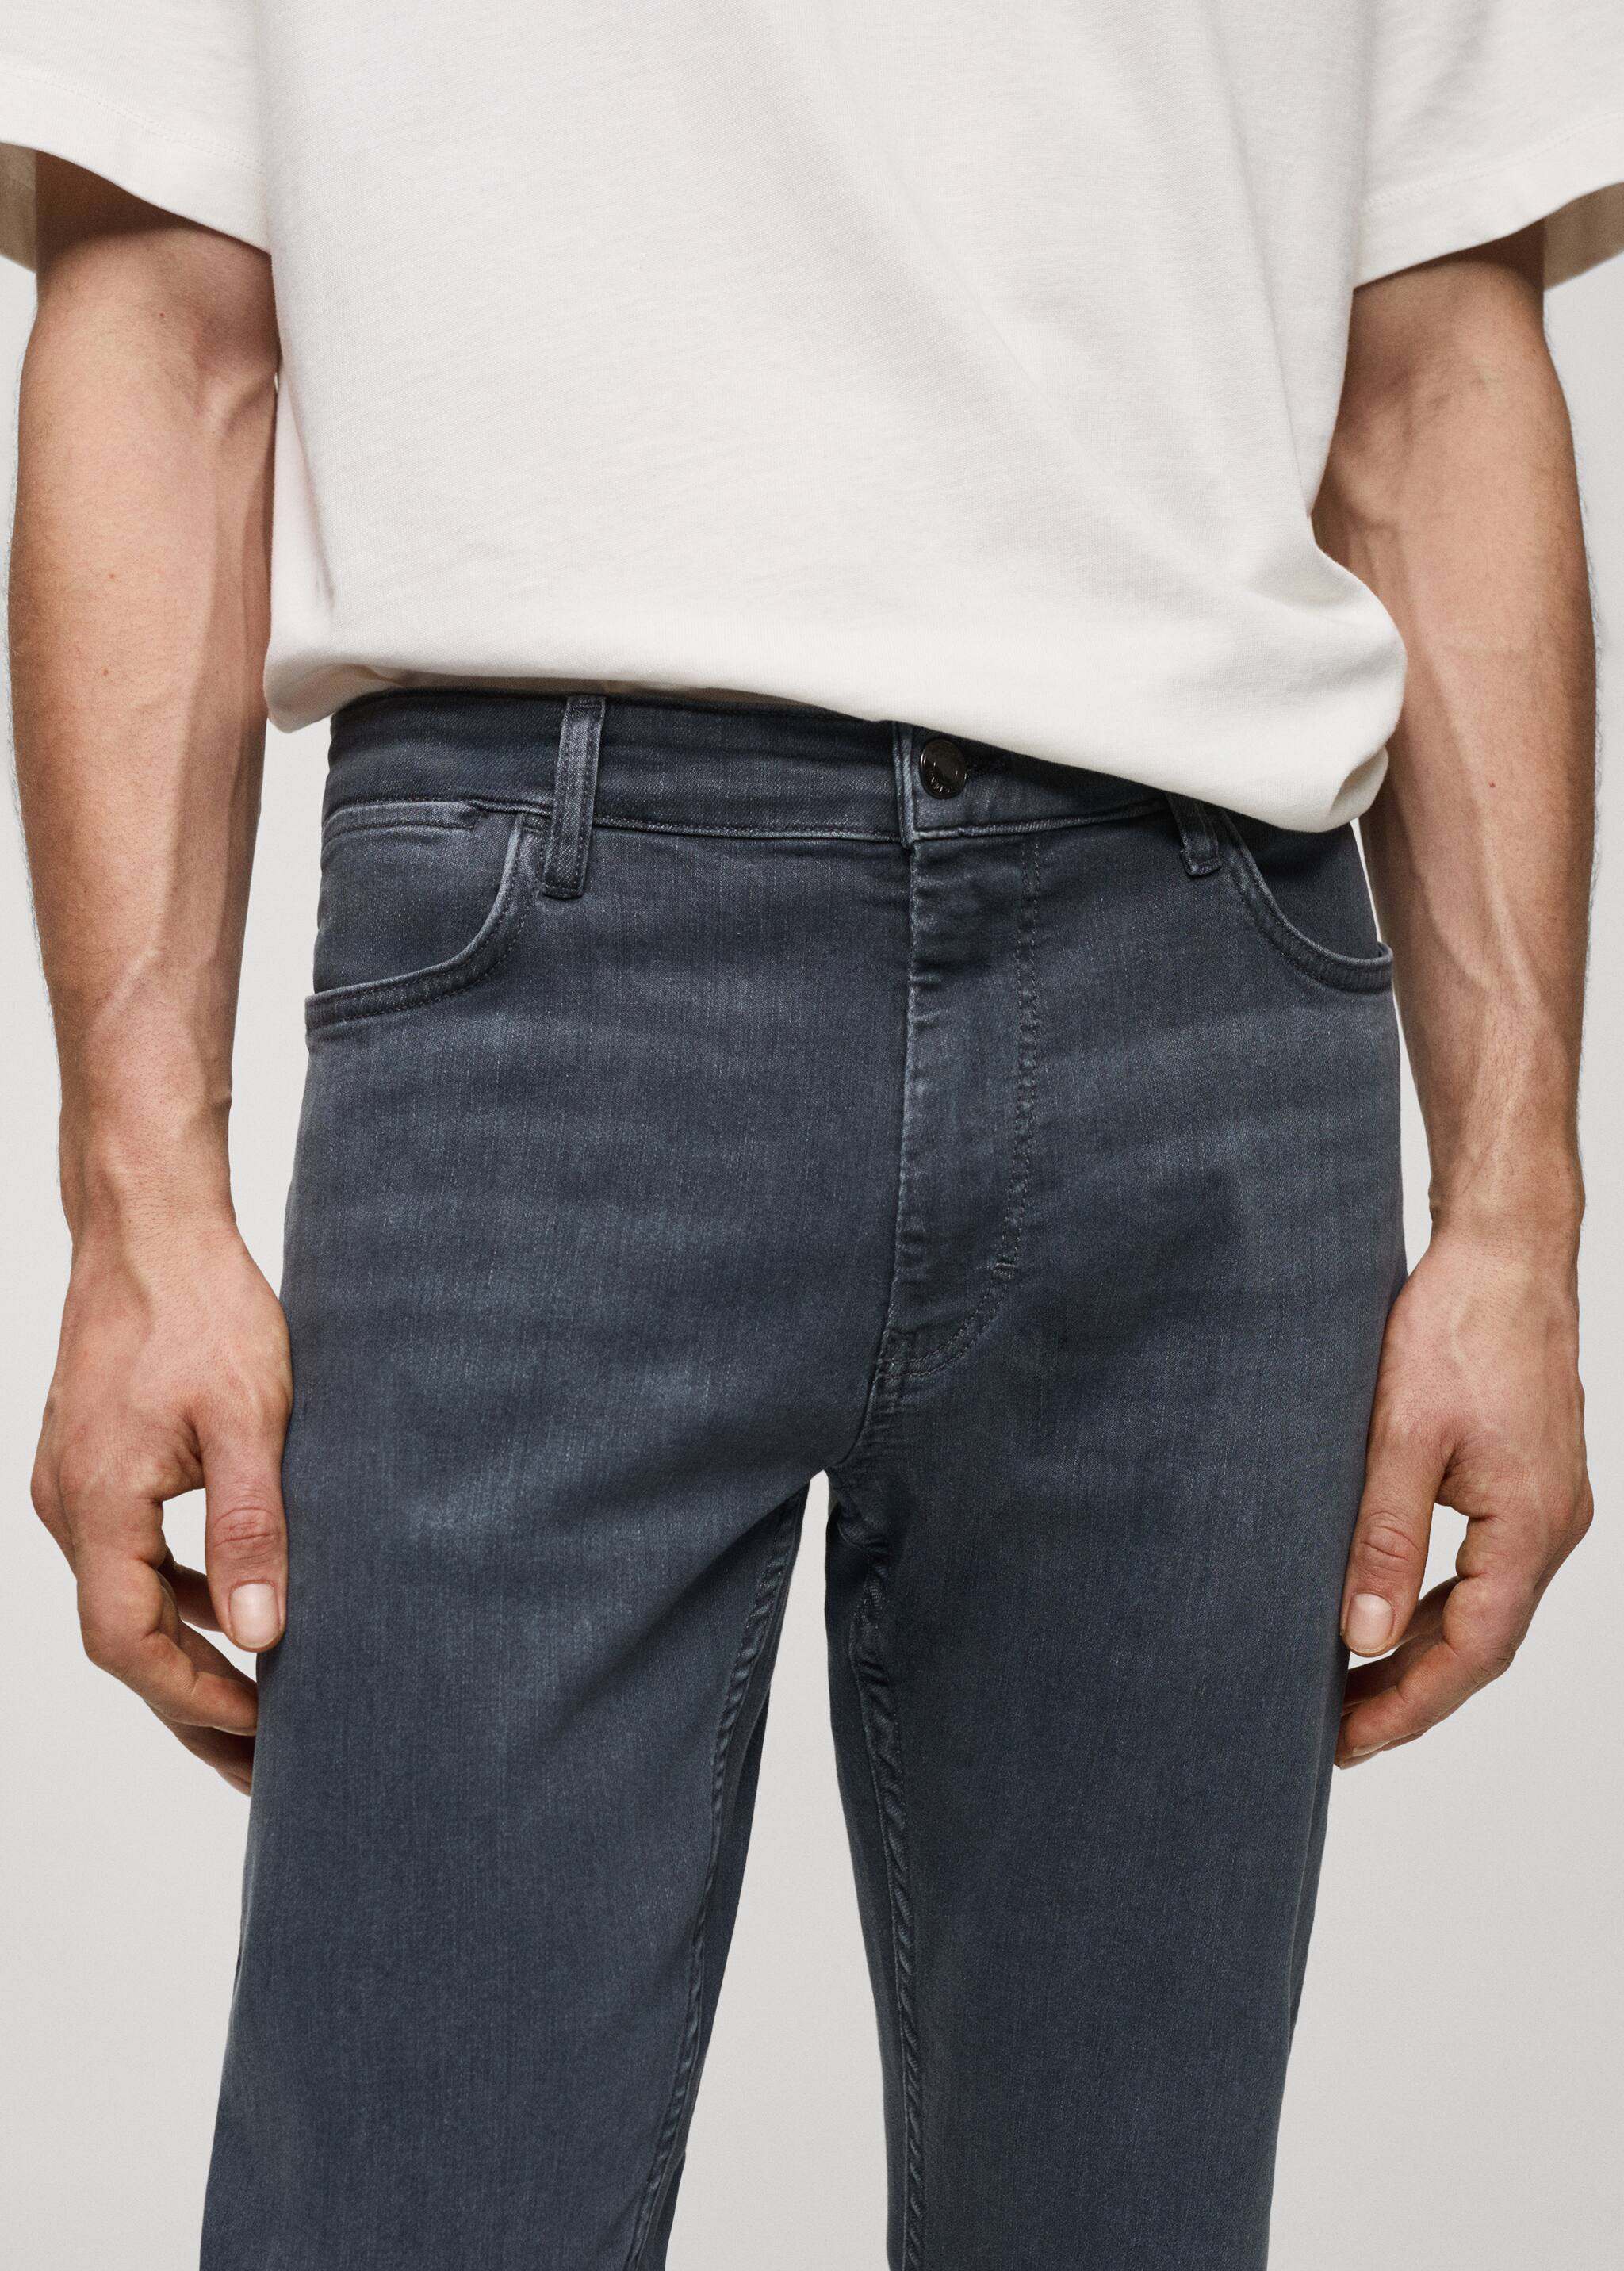 Jeans Patrick slim fit Ultra Soft Touch - Pormenor do artigo 1